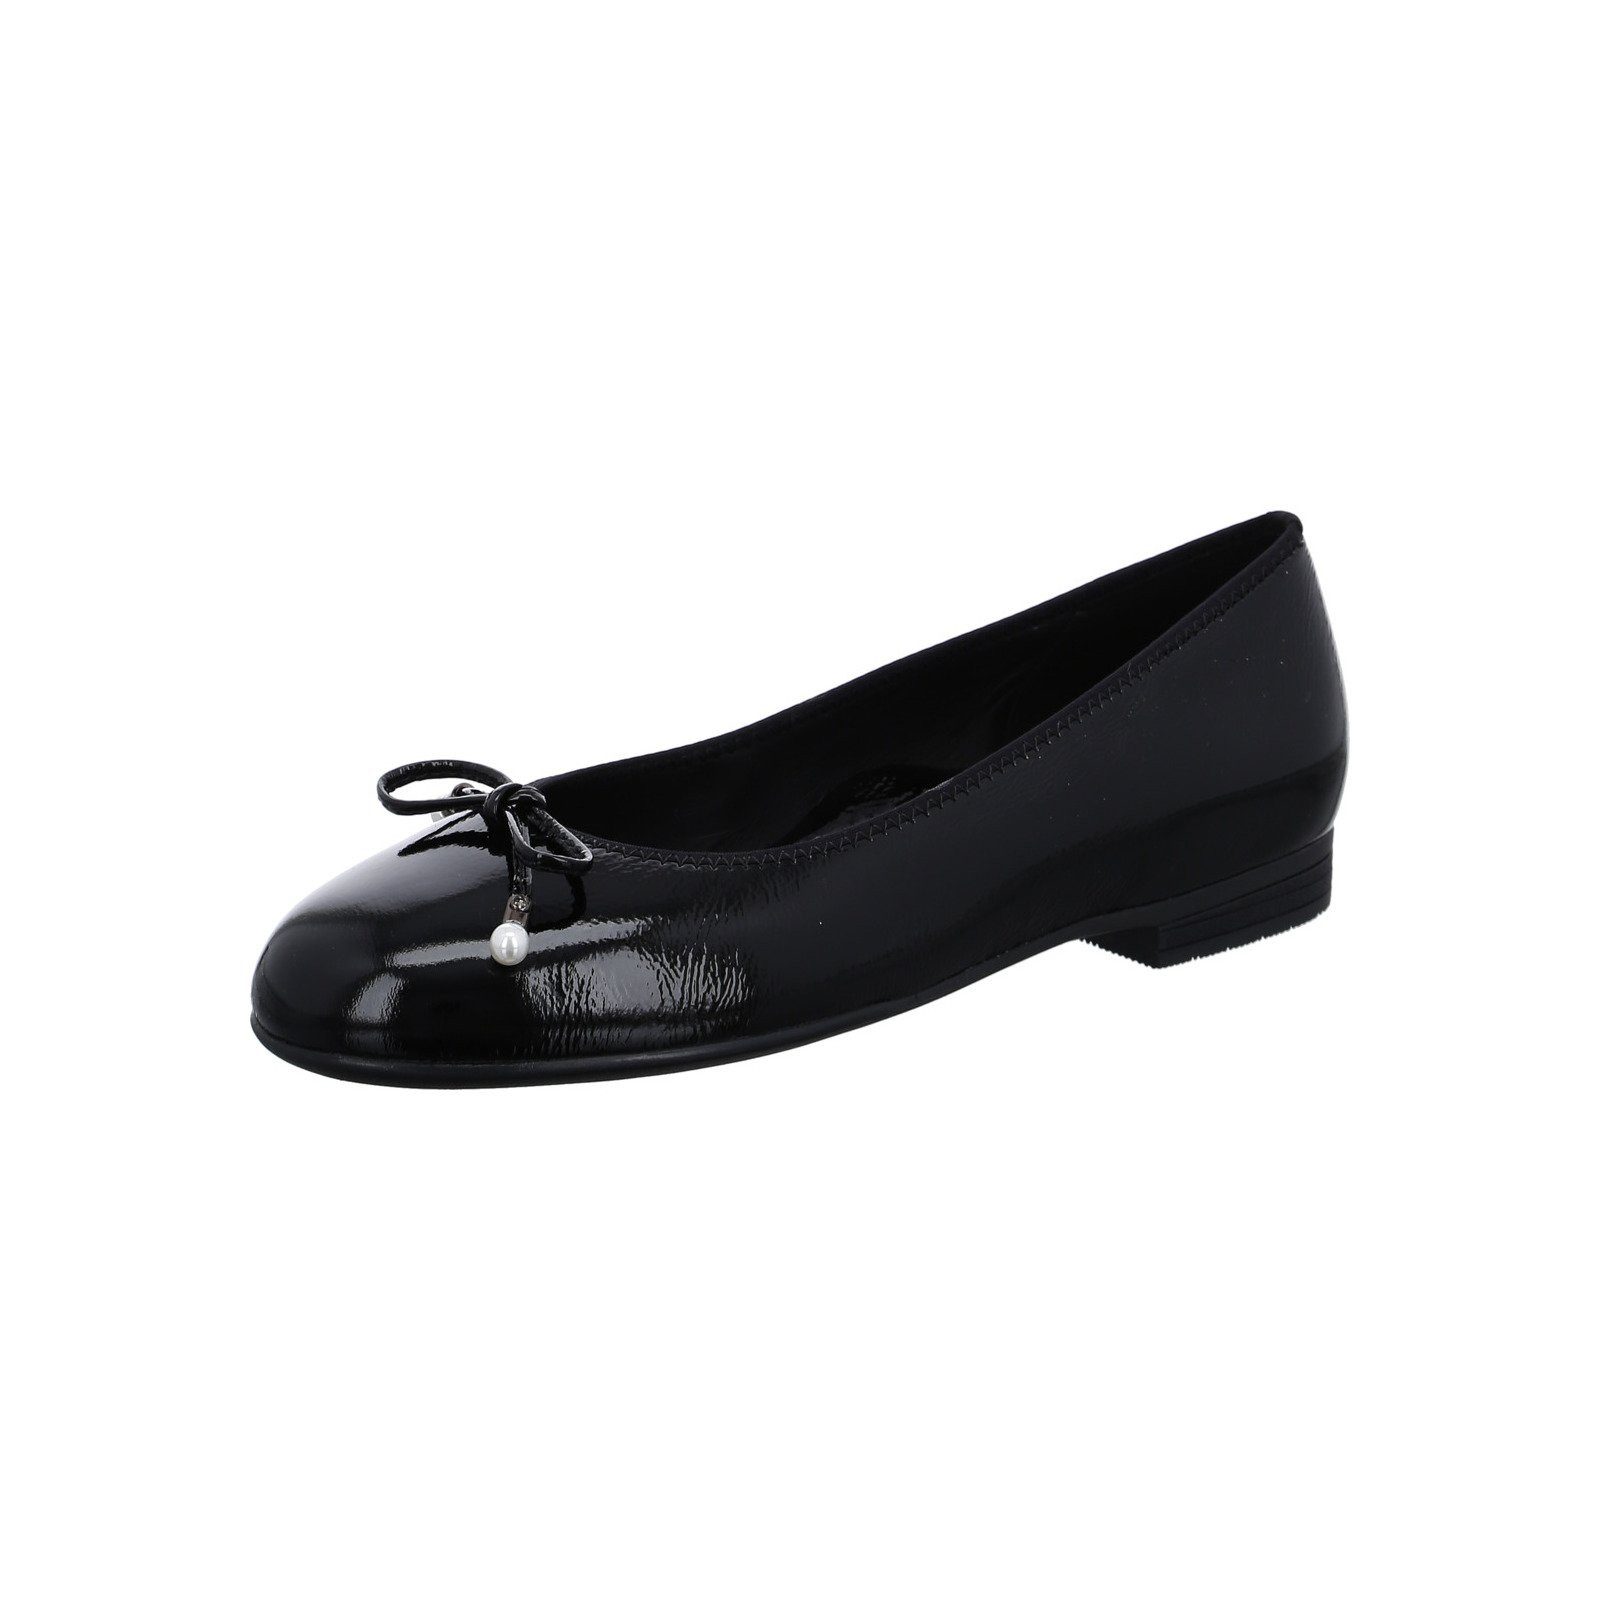 Ara Sardinia - Damen Schuhe Ballerina Lackleder schwarz